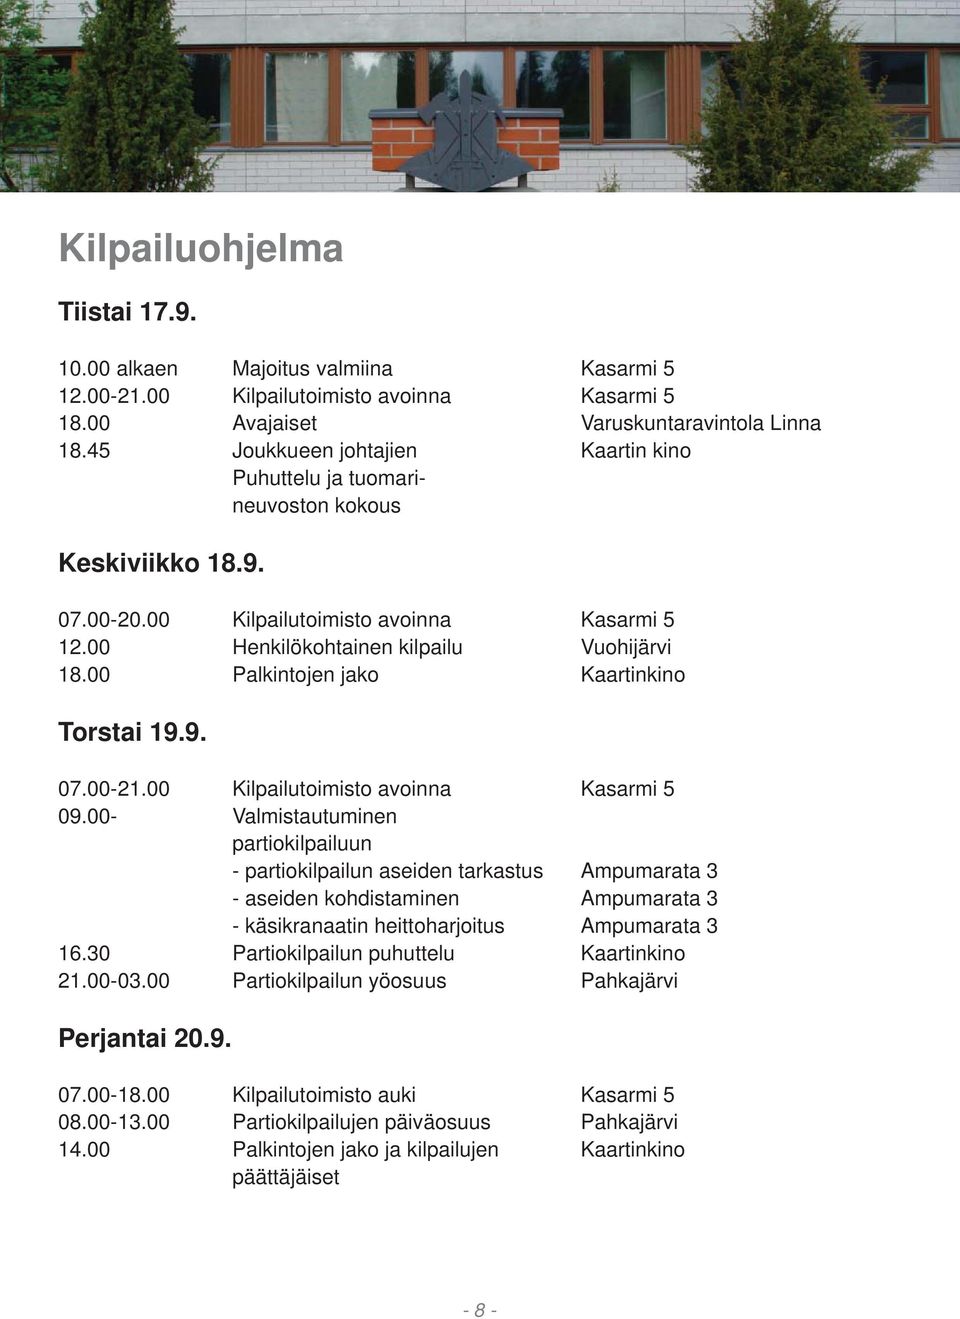 00 Palkintojen jako Kaartinkino Torstai 19.9. 07.00-21.00 Kilpailutoimisto avoinna Kasarmi 5 09.